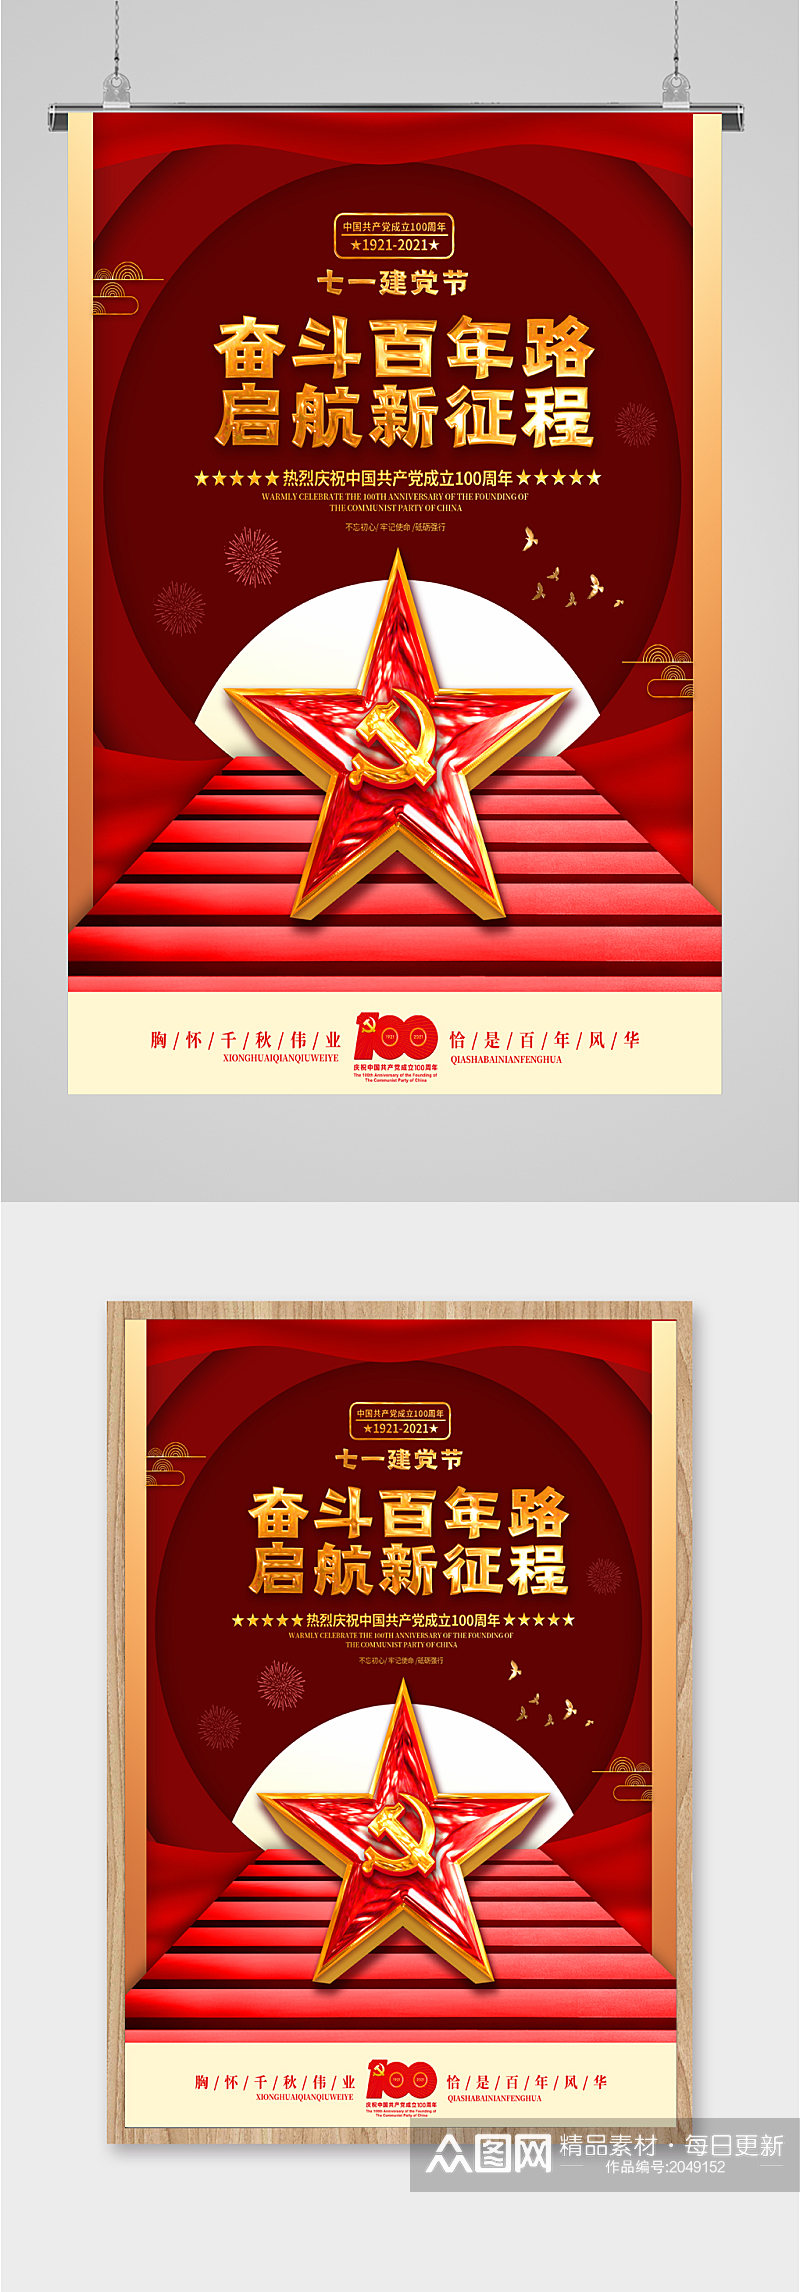 共产党奋斗百年建党节海报素材